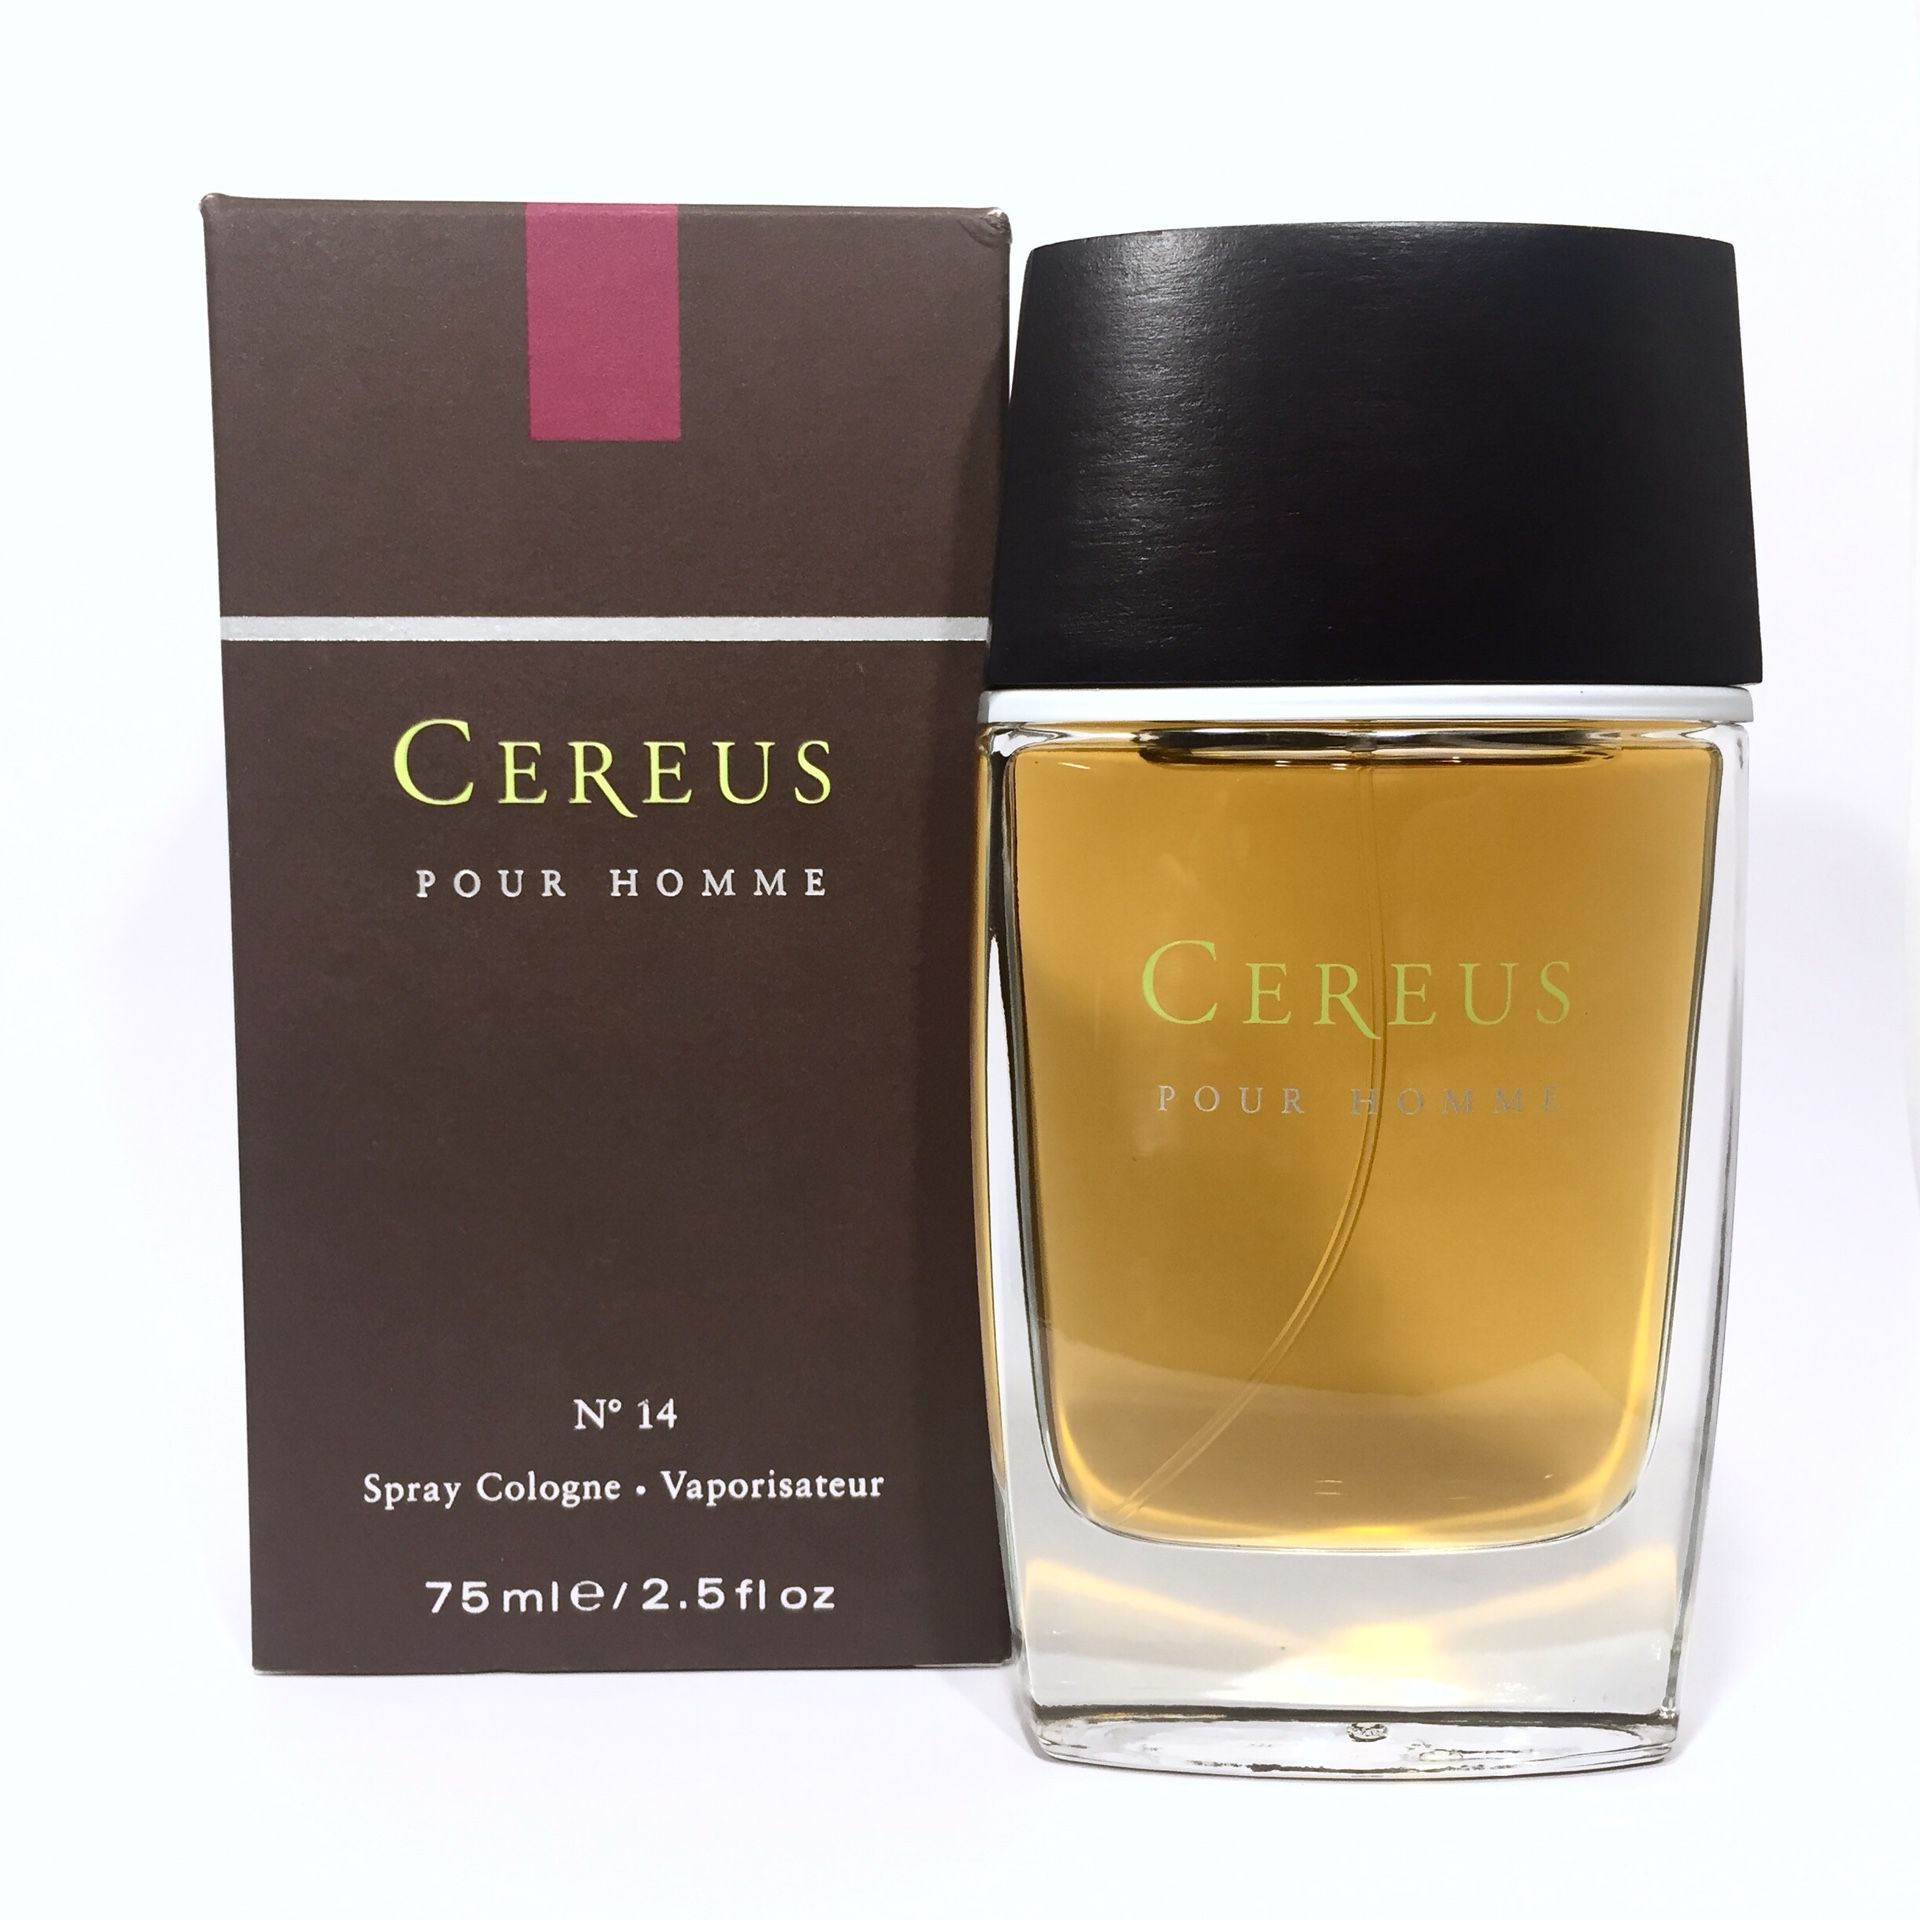 Cereus Homme 2.5oz cologne all fragrances available 4 7 11 14